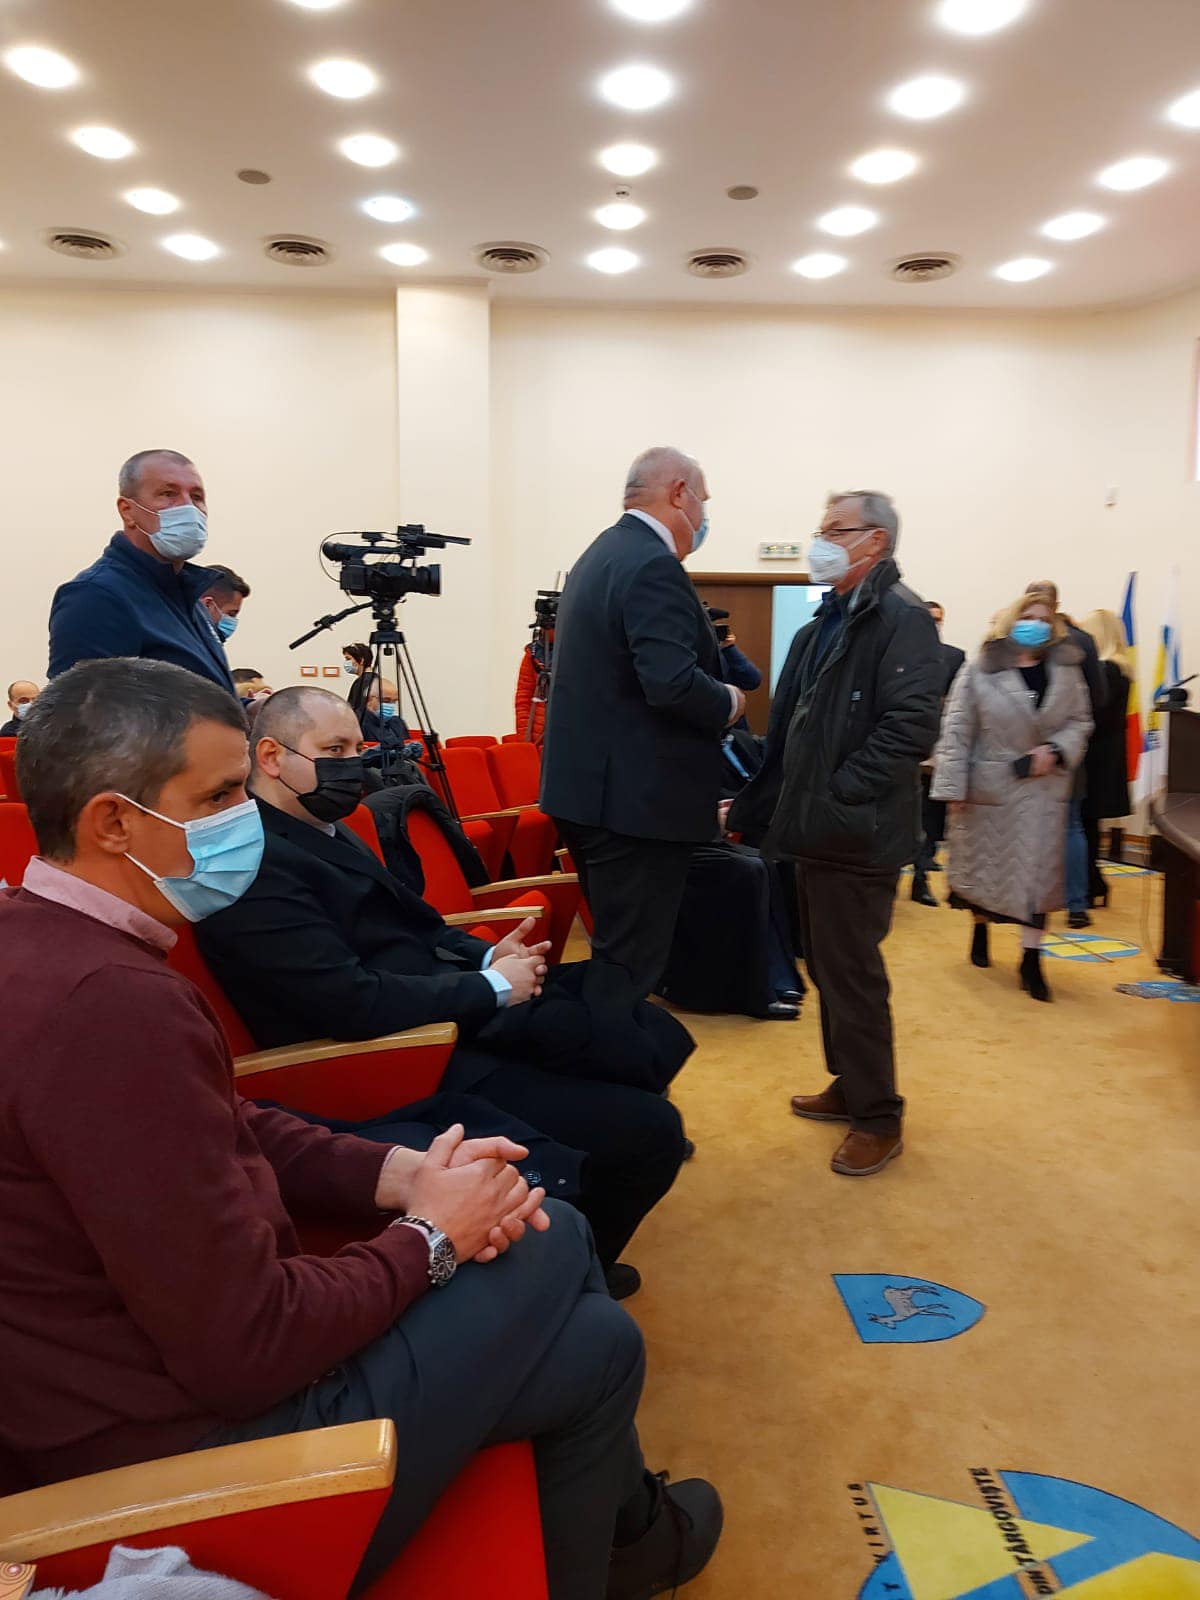 Parlamentarii USR PLUS Dâmboviţa, deputatul Daniel Blaga şi senatorul Dragoş Popescu: “Vom monitoriza atent proiectul Padina-Peştera”